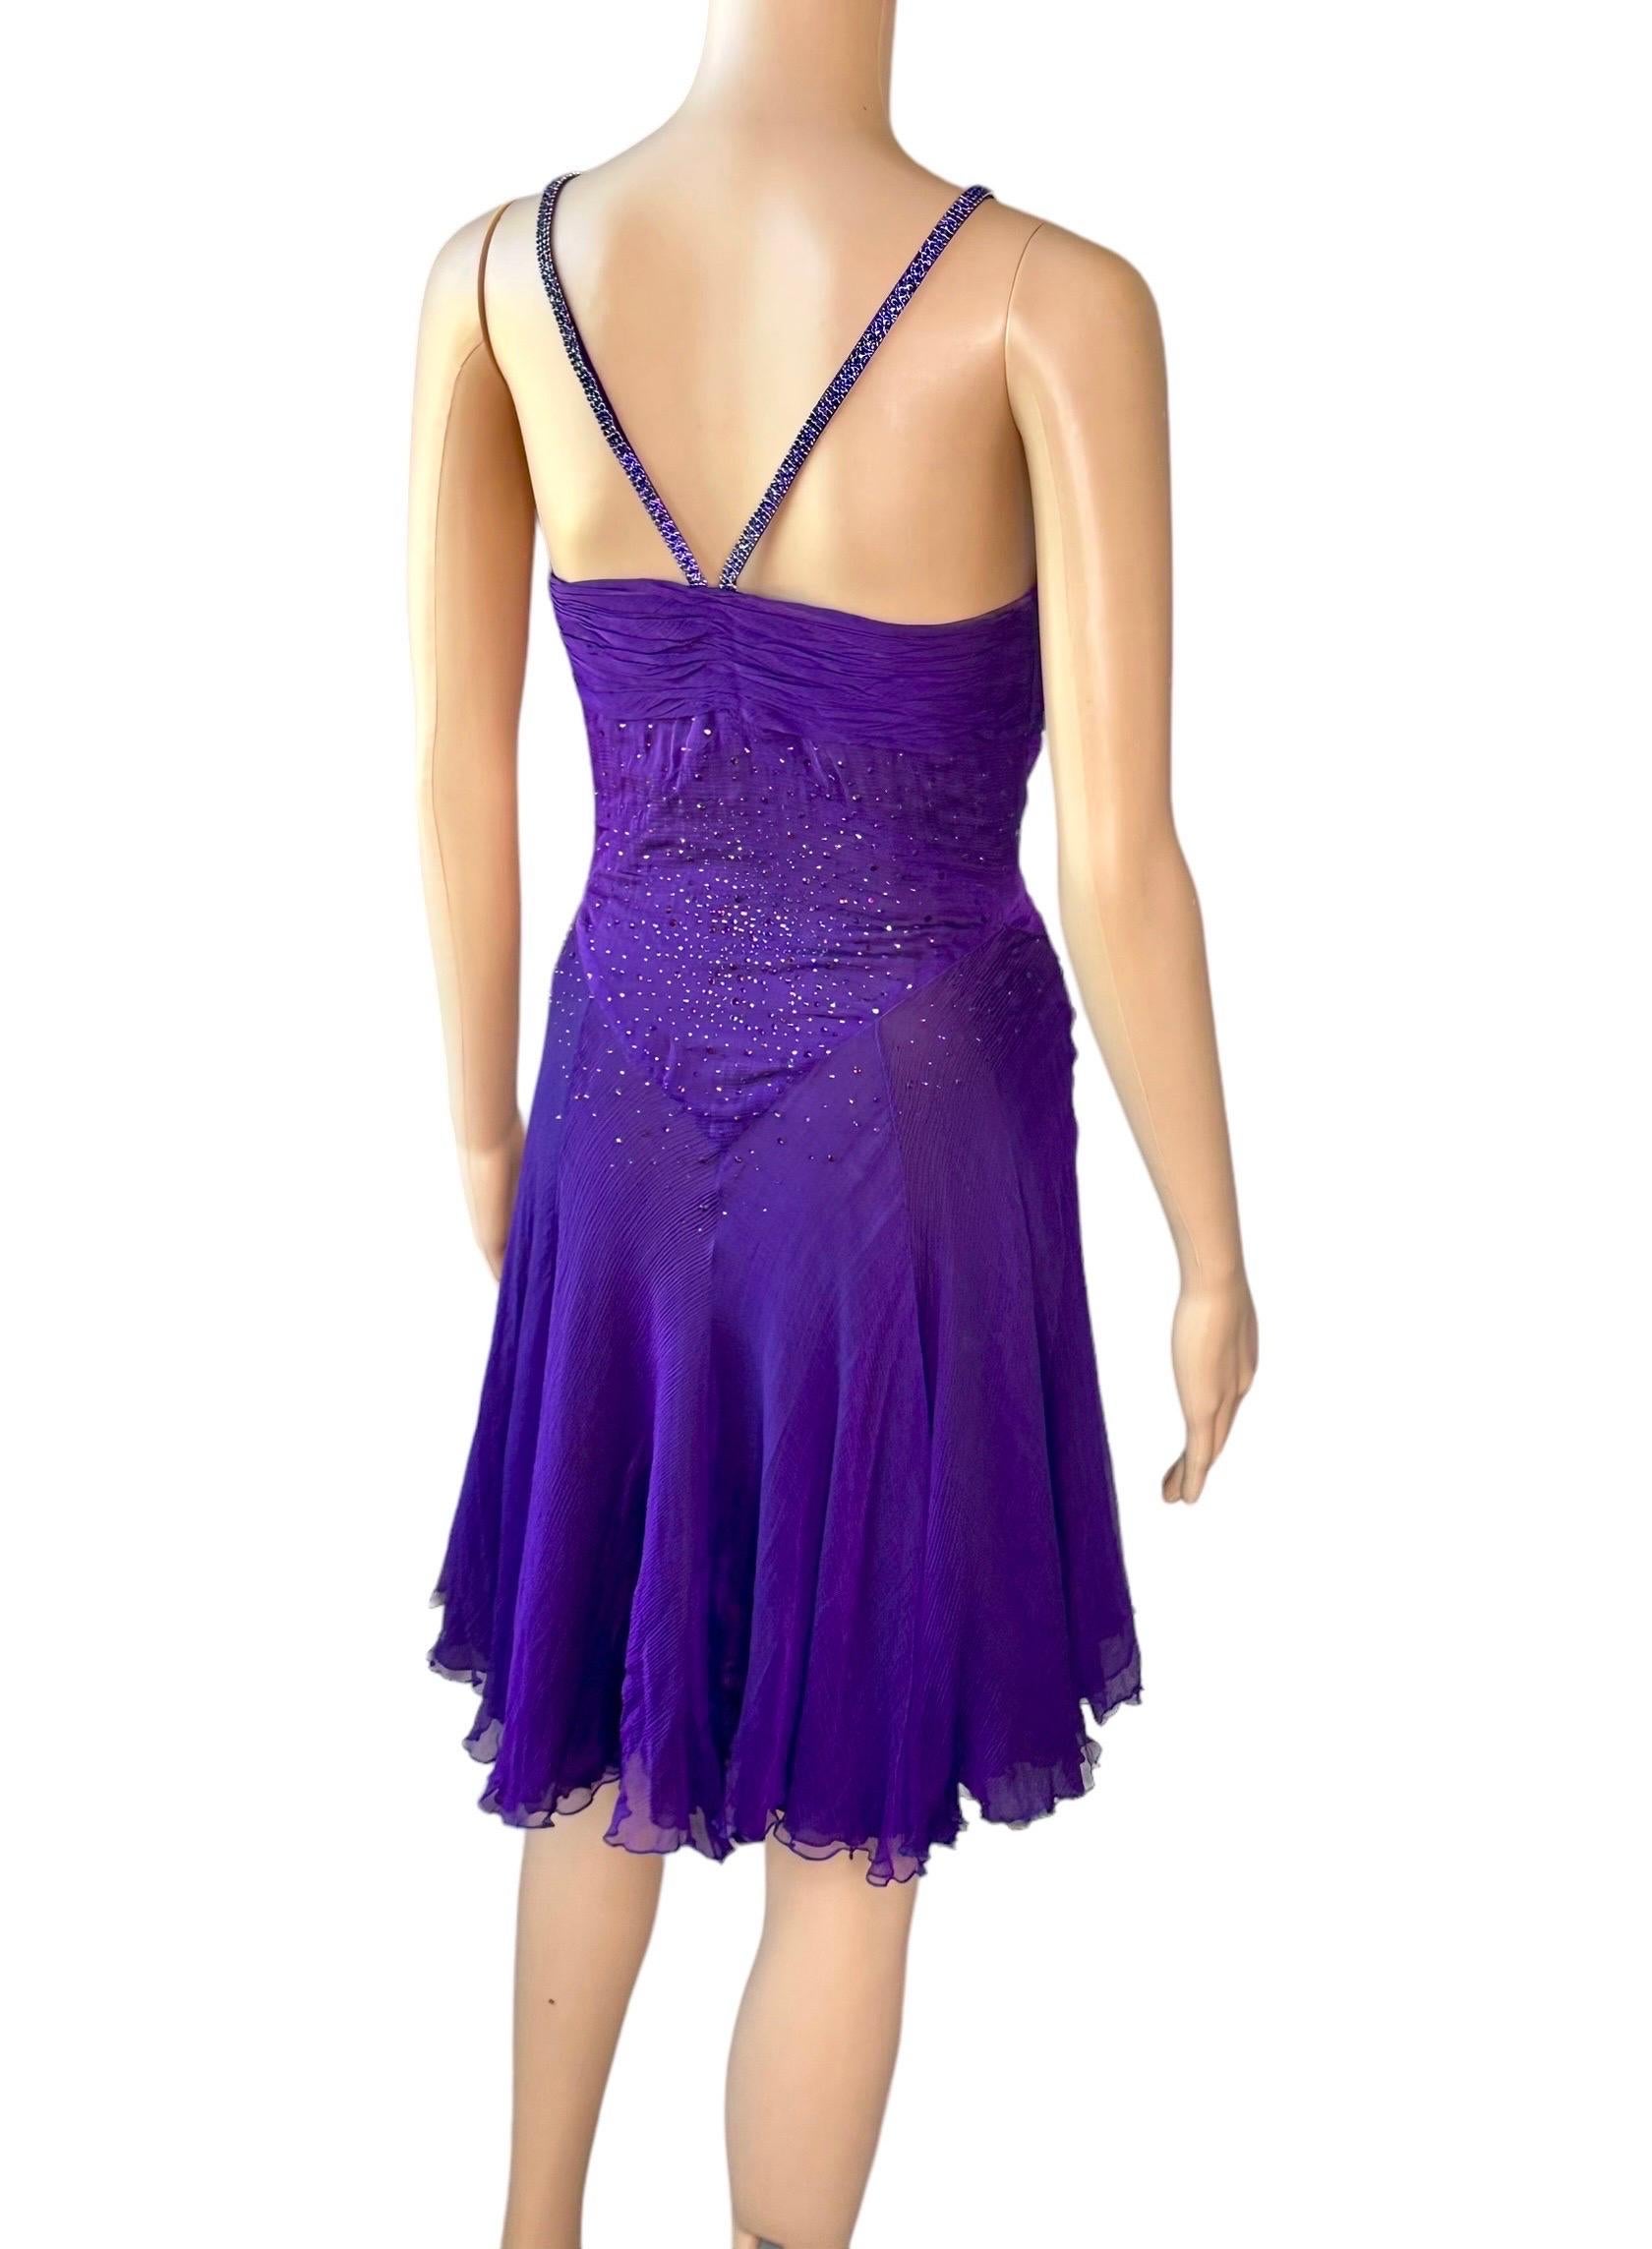 Versace c.2007 Crystal Embellished Plunging Neckline Semi-Sheer Purple Dress For Sale 2